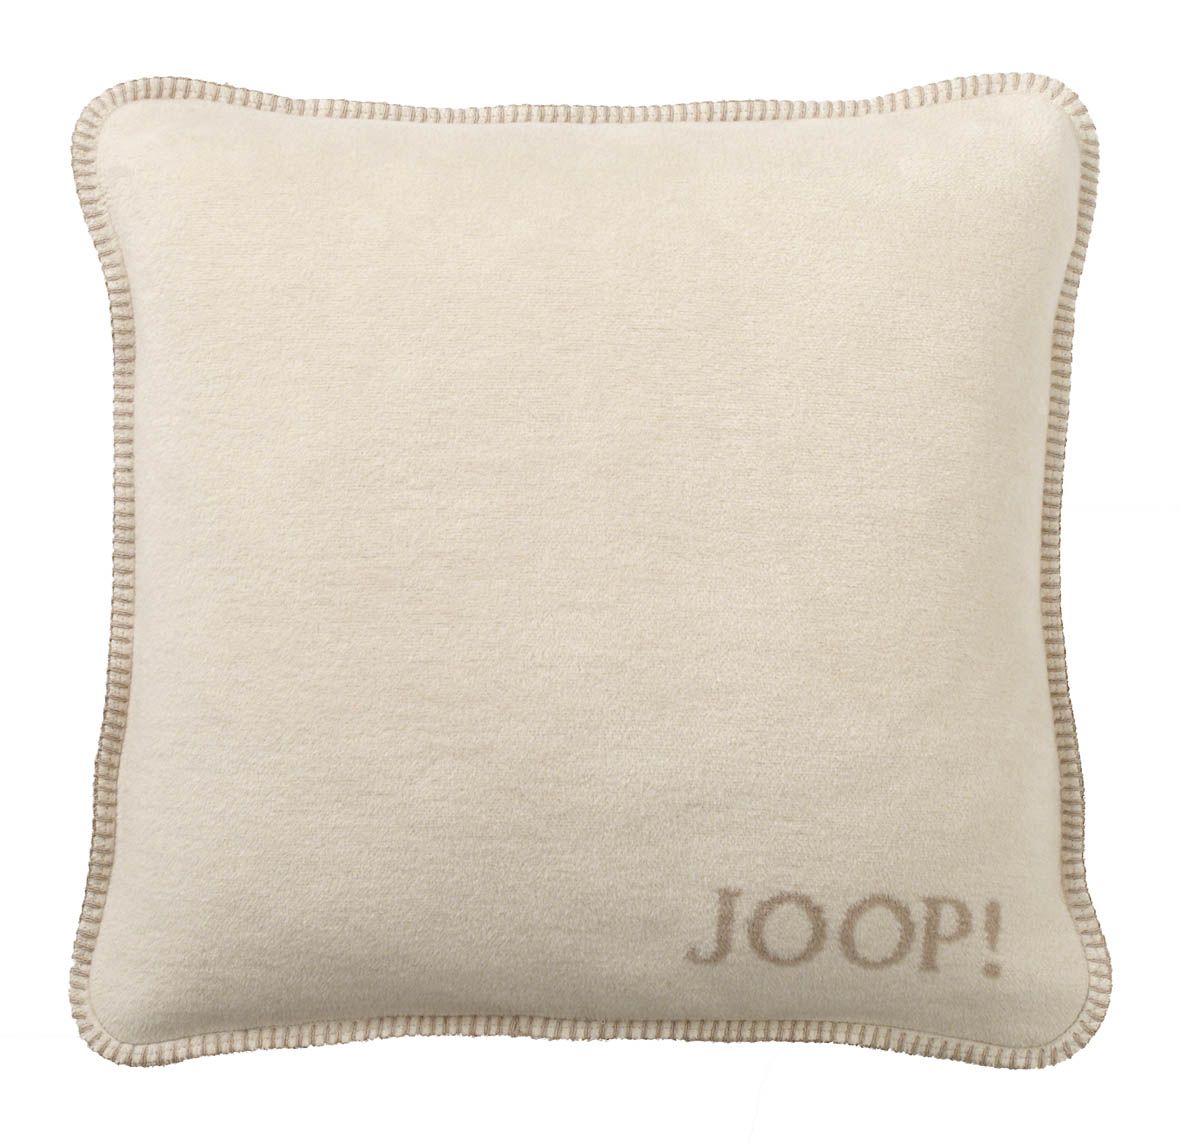 JOOP! Uni-Doubleface Kissen 50x50 pergament-sand